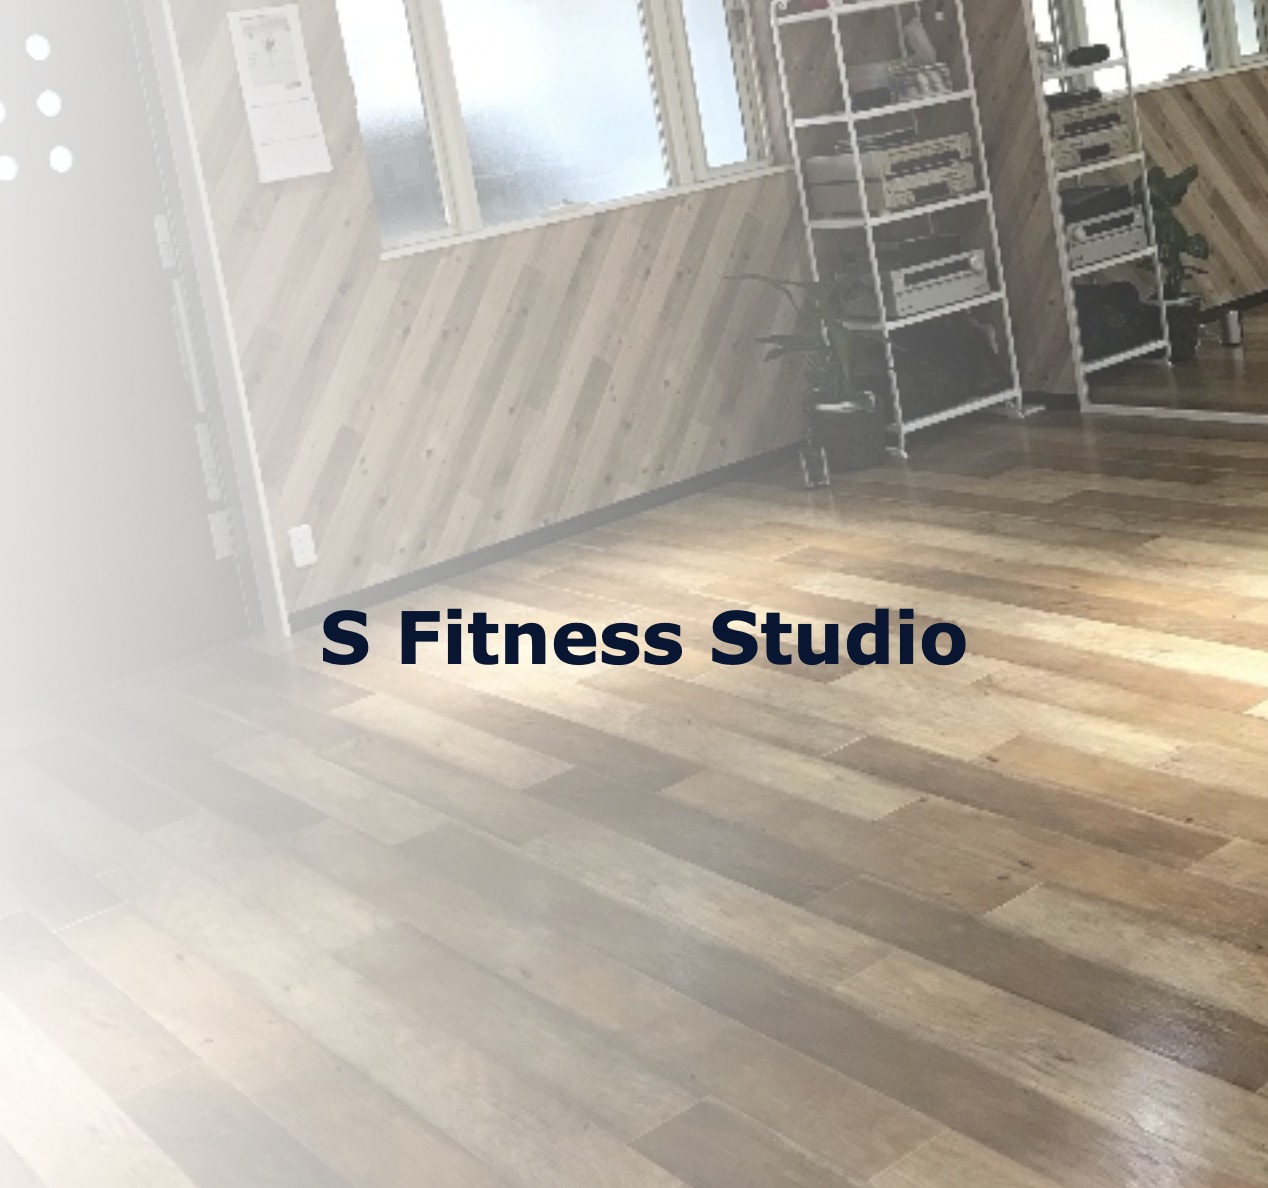 S Fitness Studioの施設画像